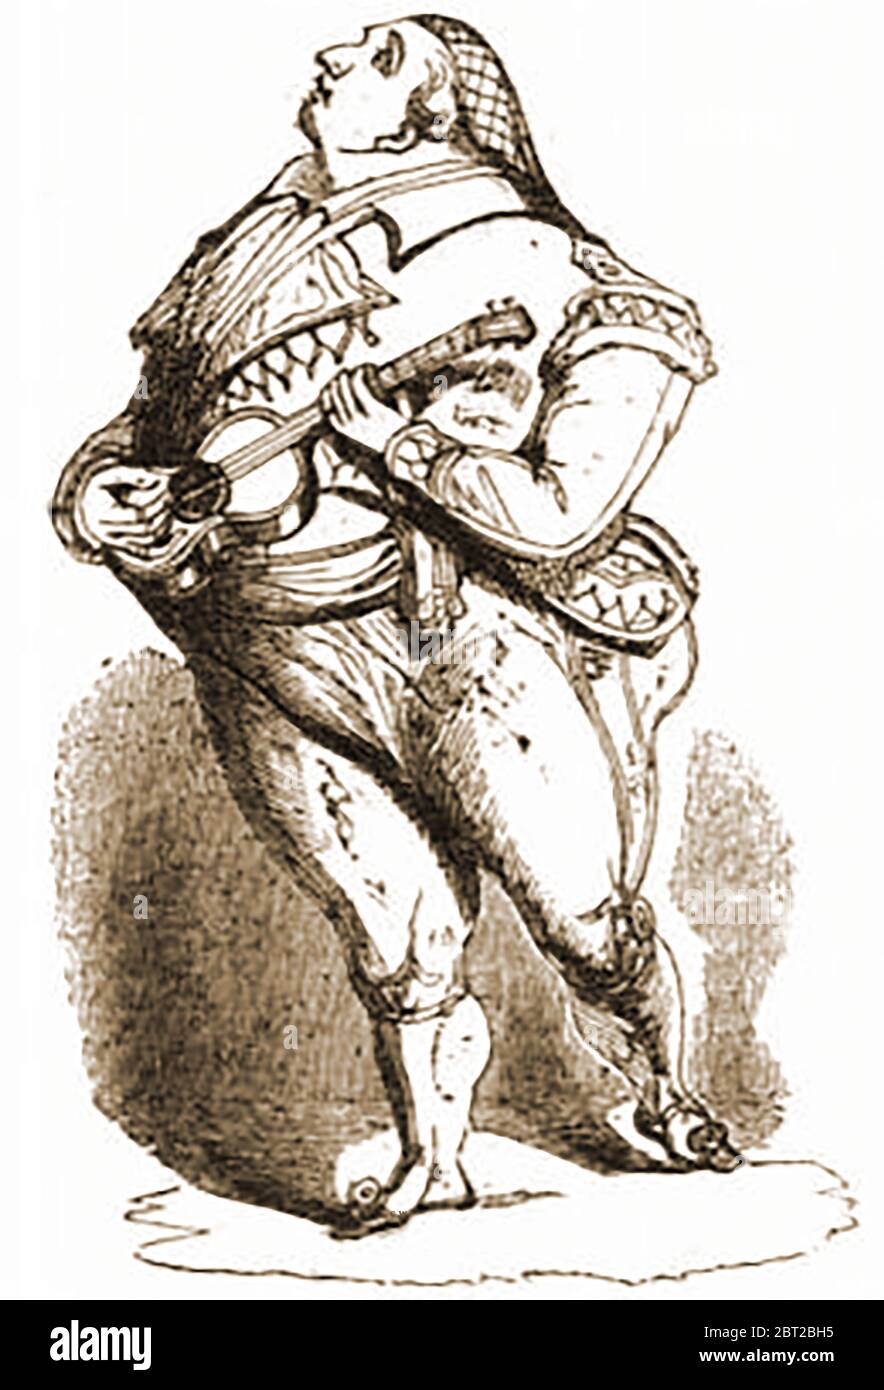 Ein Karikaturporträt von 1842, in dem die Sängerin Lablache 1842 im Theater ihrer Majestät in London, England, singt. Luigi Lablache ( 1794 – 1858) war ein italienischer Opernsänger französischer und irischer Abstammung. Er war vor allem für seine komischen Performances und seine Schauspielerei bekannt. In seinen jüngeren Tagen studierte er Gesang & Violine. Er war ursprünglich ein Altip, entwickelte aber eine kraftvolle und agile Bassstimme. Die Oper Elisa e Claudio wurde 1821 von Saverio Mercadante speziell für ihn geschrieben. Interessanterweise war der Filmschauspieler Stewart Granger sein Ururenkel Stockfoto